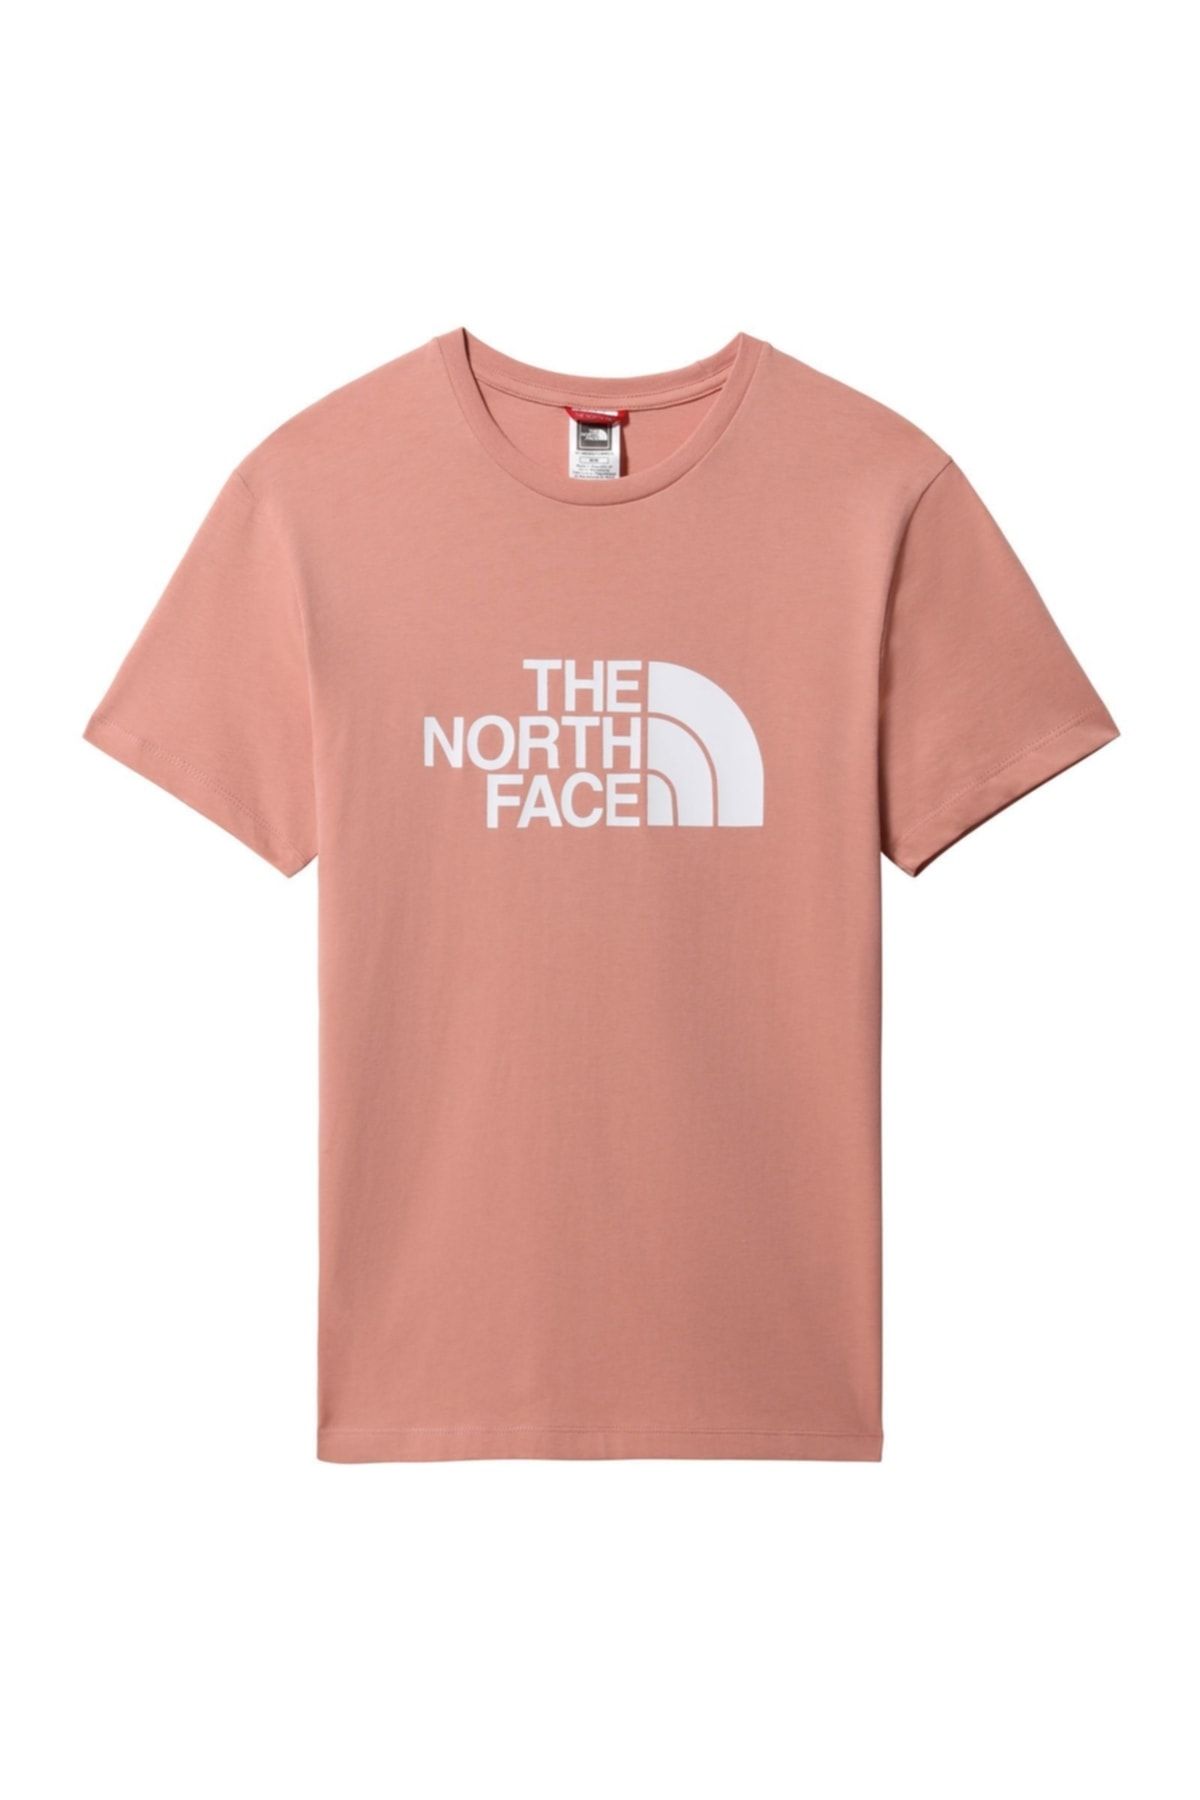 The North Face Easy Tee Kadın T-shirt - Nf0a4t1qhcz